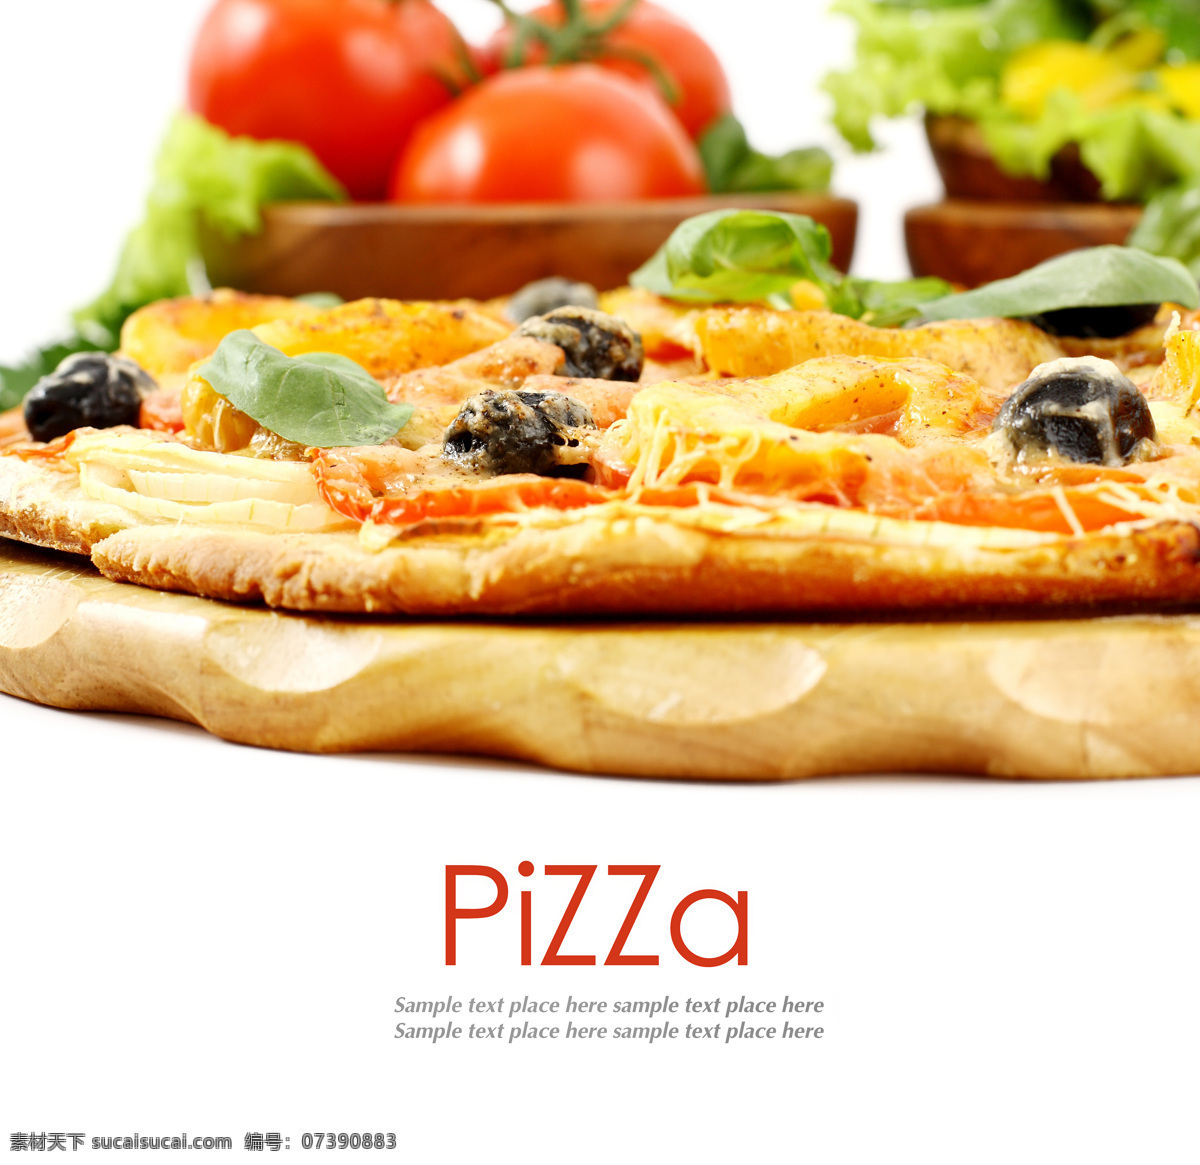 蕃茄 披萨 比萨 饼 pizza 意大利美食 美食 美味 餐饮美食 西红柿 蔬菜 外国美食